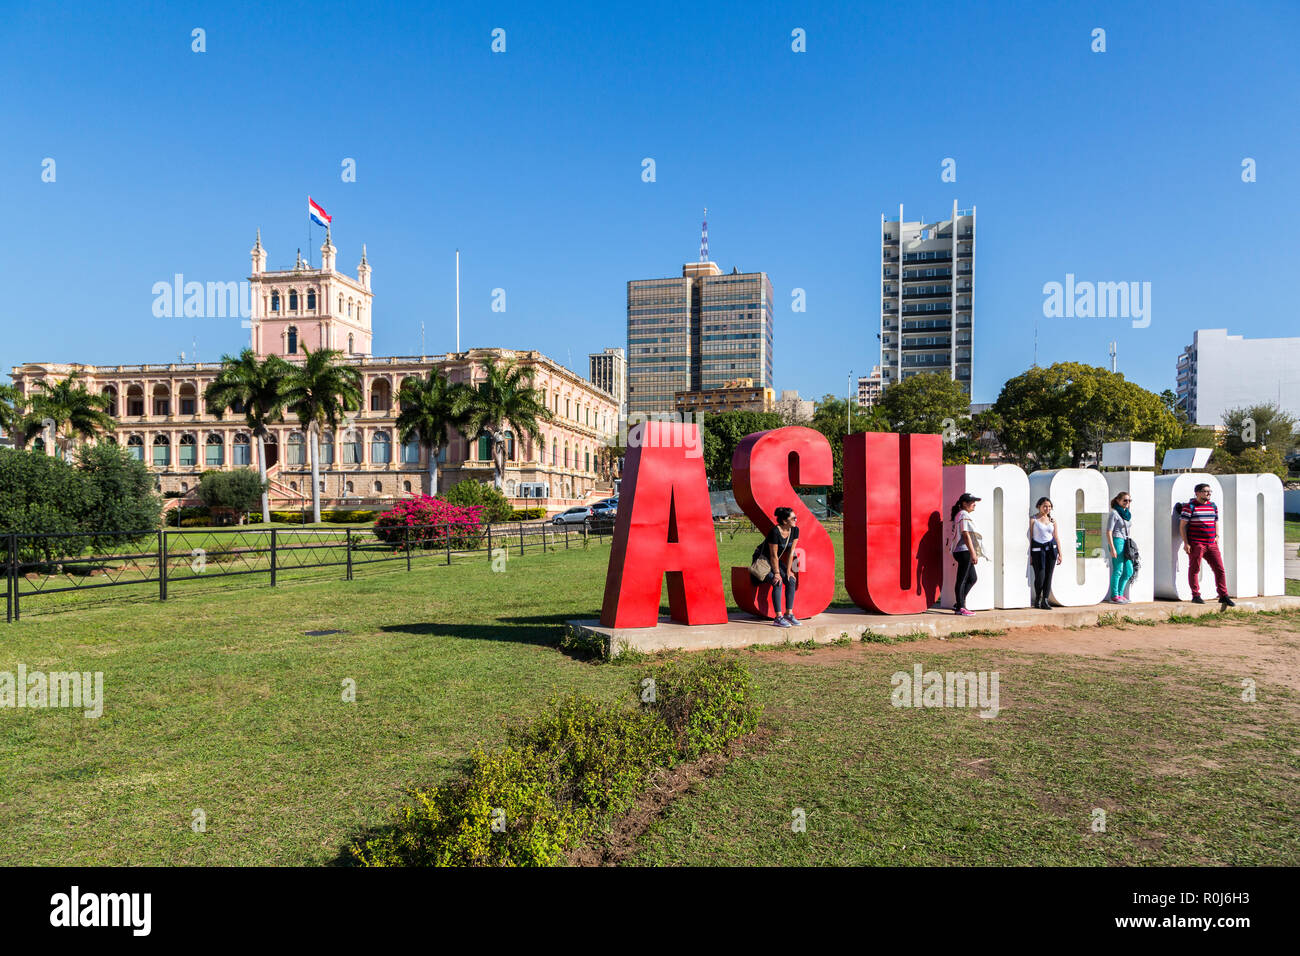 Cinq touristes posent avec "Asuncion" lettres et Palacio de los Lopez (palais présidentiel) en arrière-plan. La ville d'Asuncion, Paraguay, en Amérique latine Banque D'Images